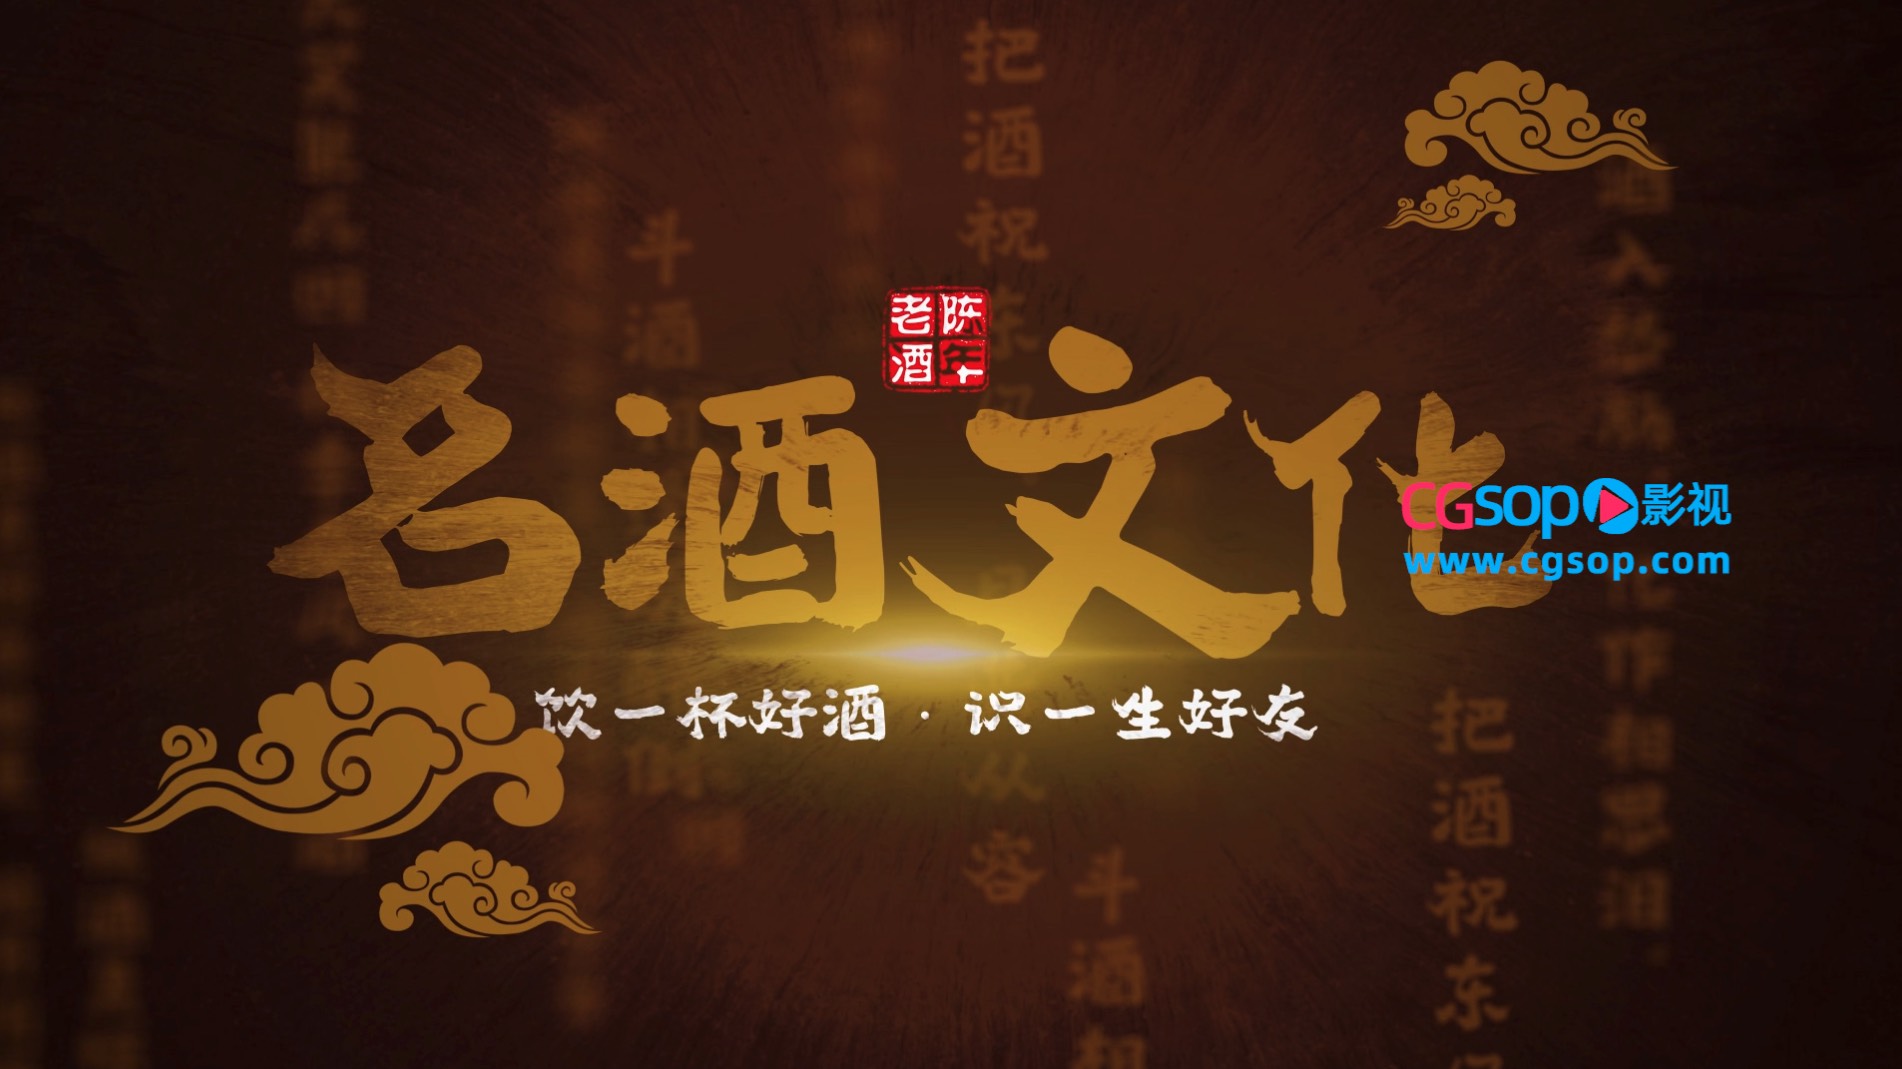 中国传统酒文化水墨风图文模板